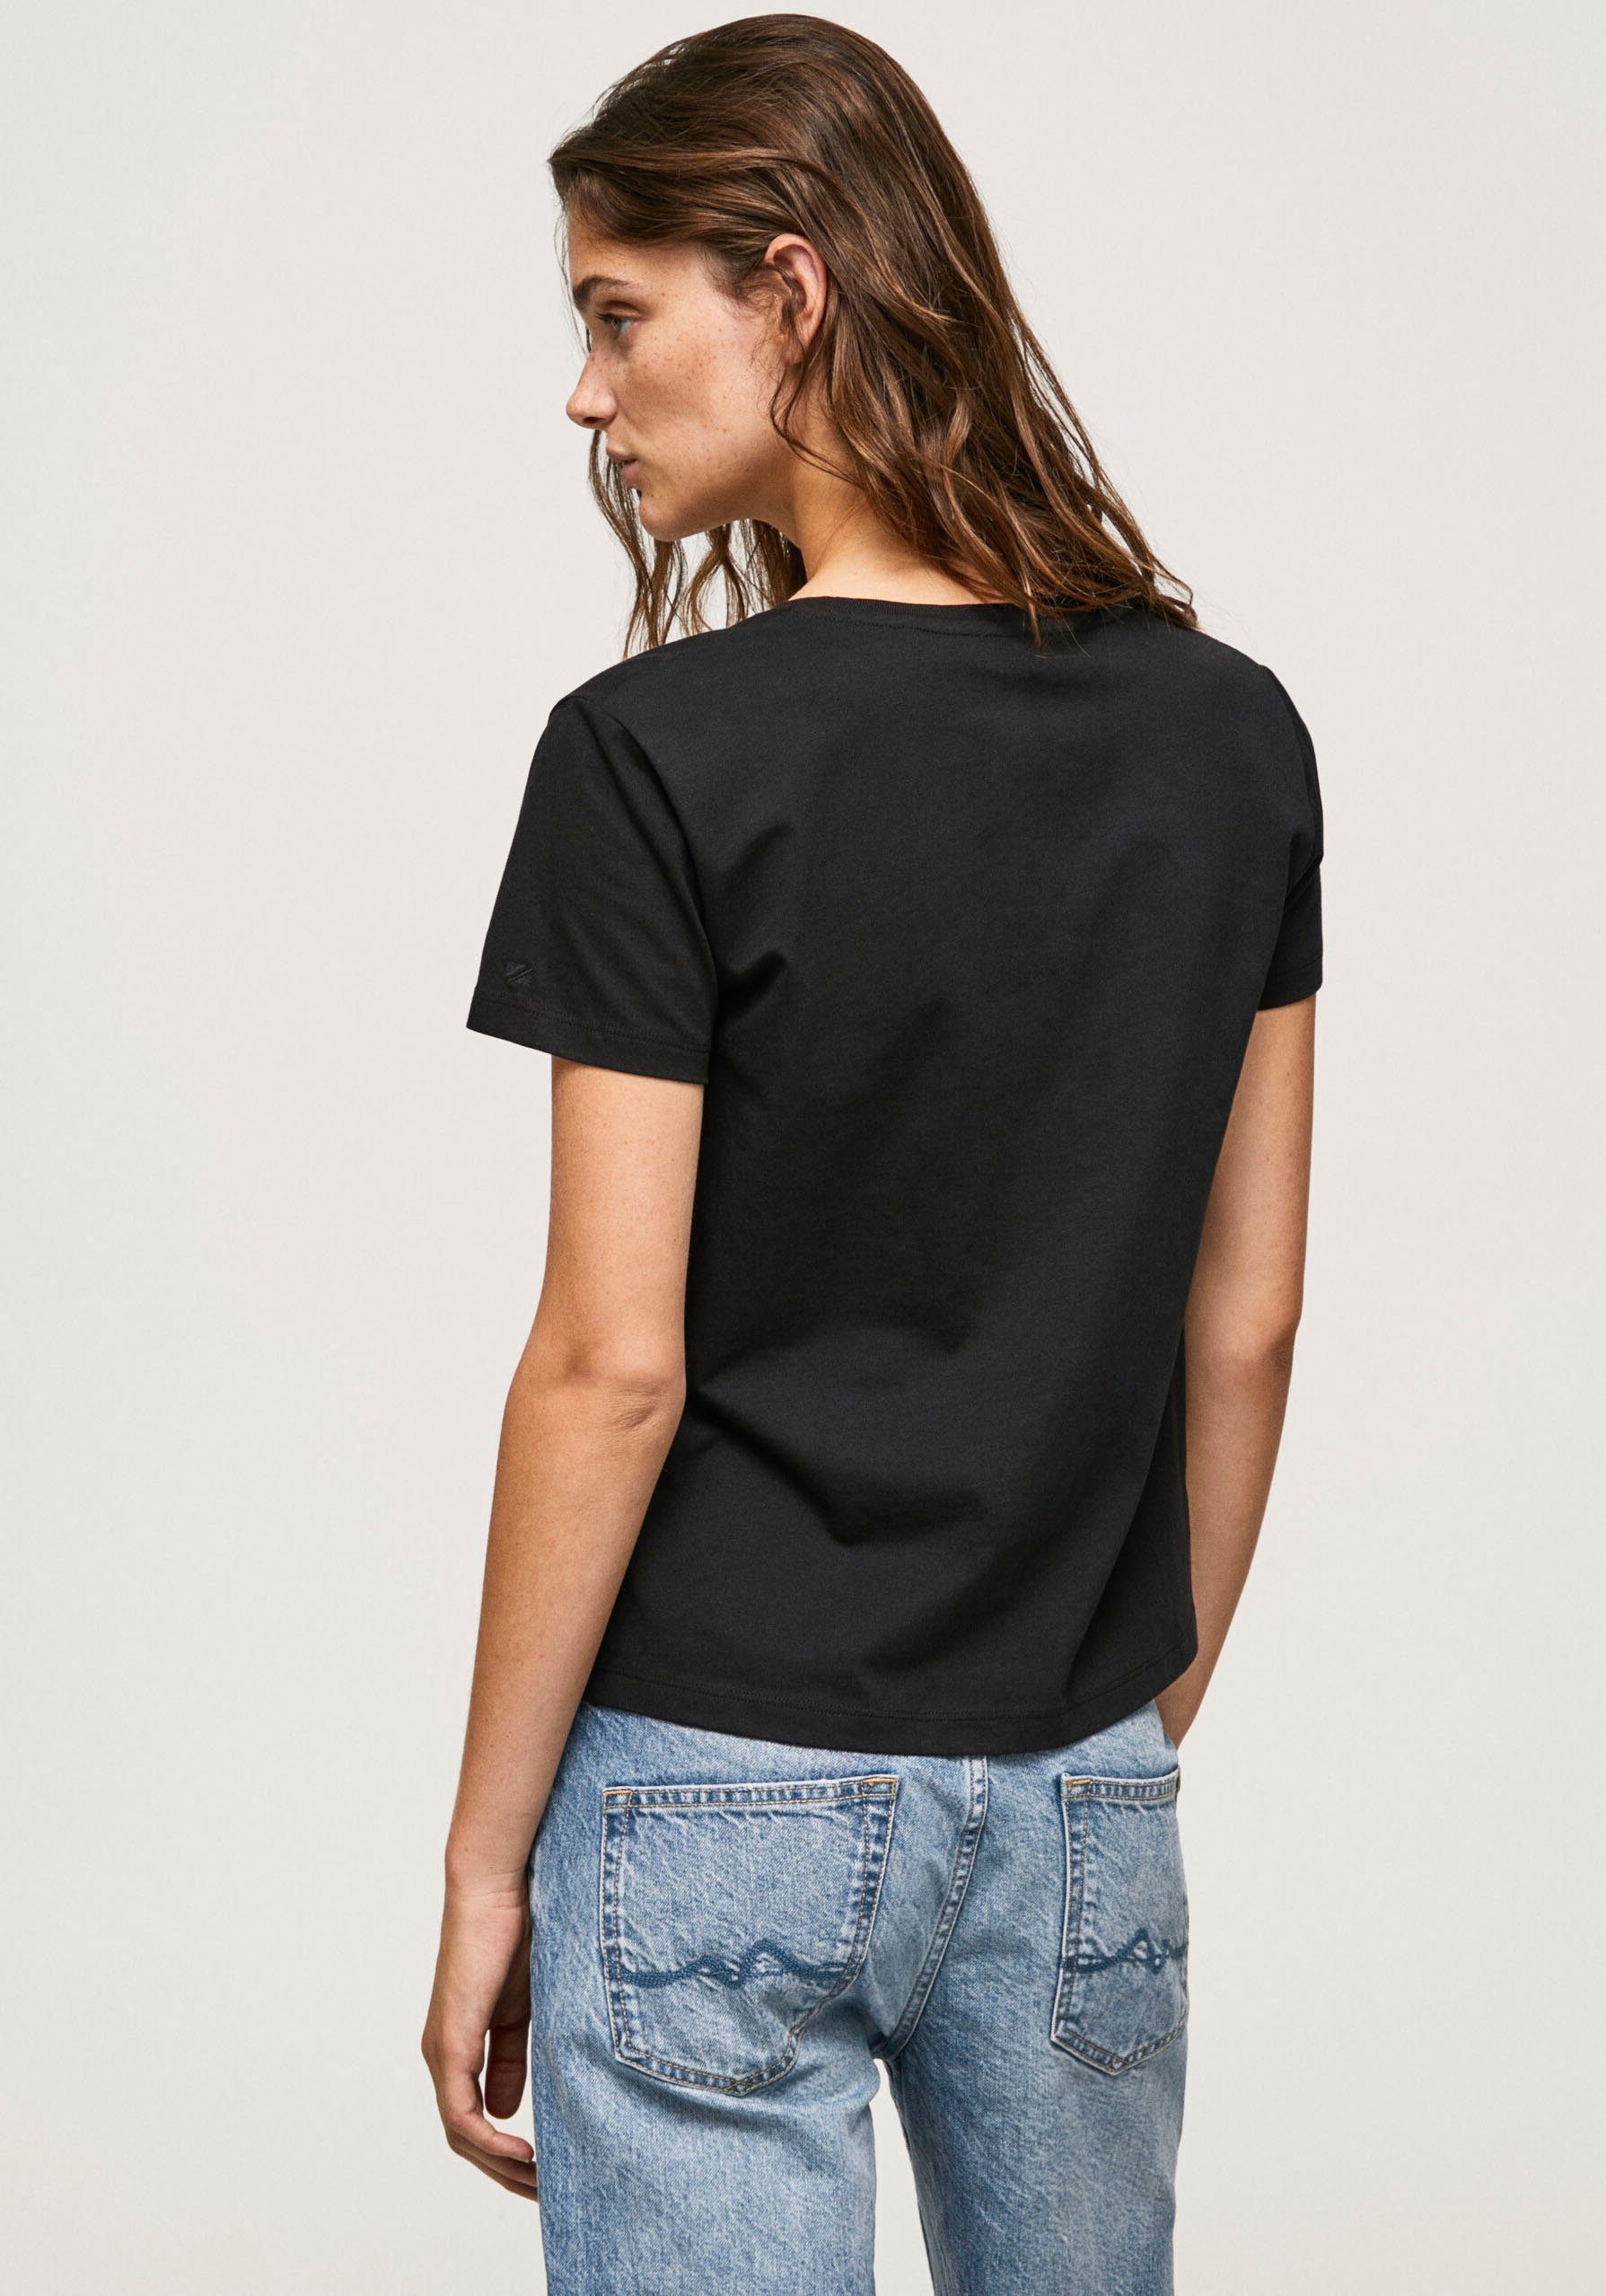 Lali T-Shirt Pepe Jeans black